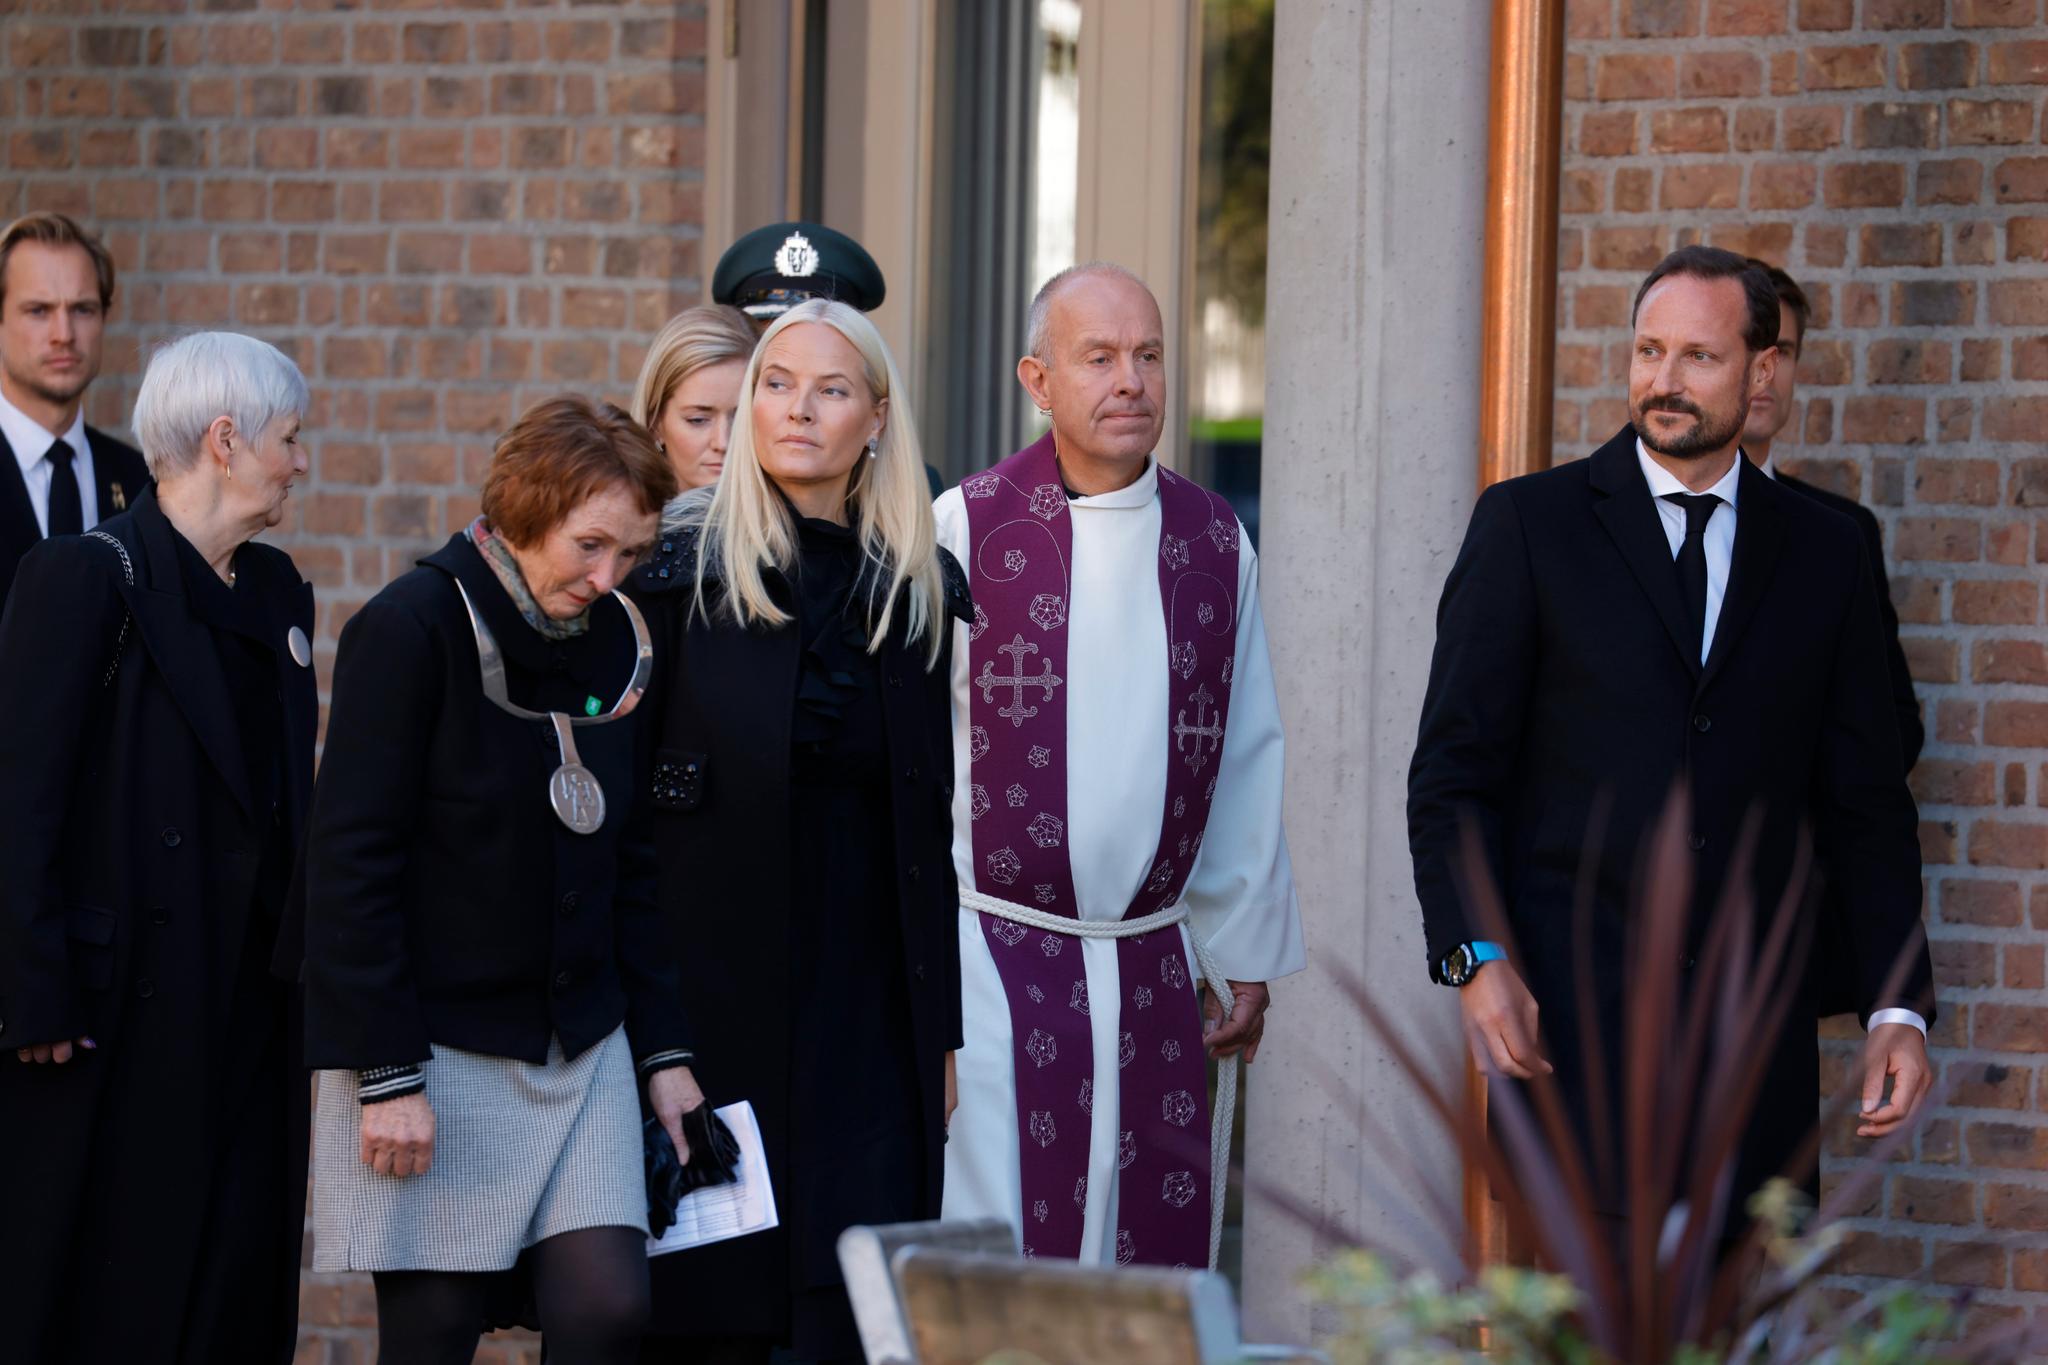 Kronprins Haakon og Kronprinsesse Mette-Marit deltok i prosesjonen ut av kirken på vei til kirkekaffe på rådhuset sammen med blant andre biskop Jan Otto Myrseth, prost Roar Tønnessen og ordfører Kari Anne Sand (Sp).